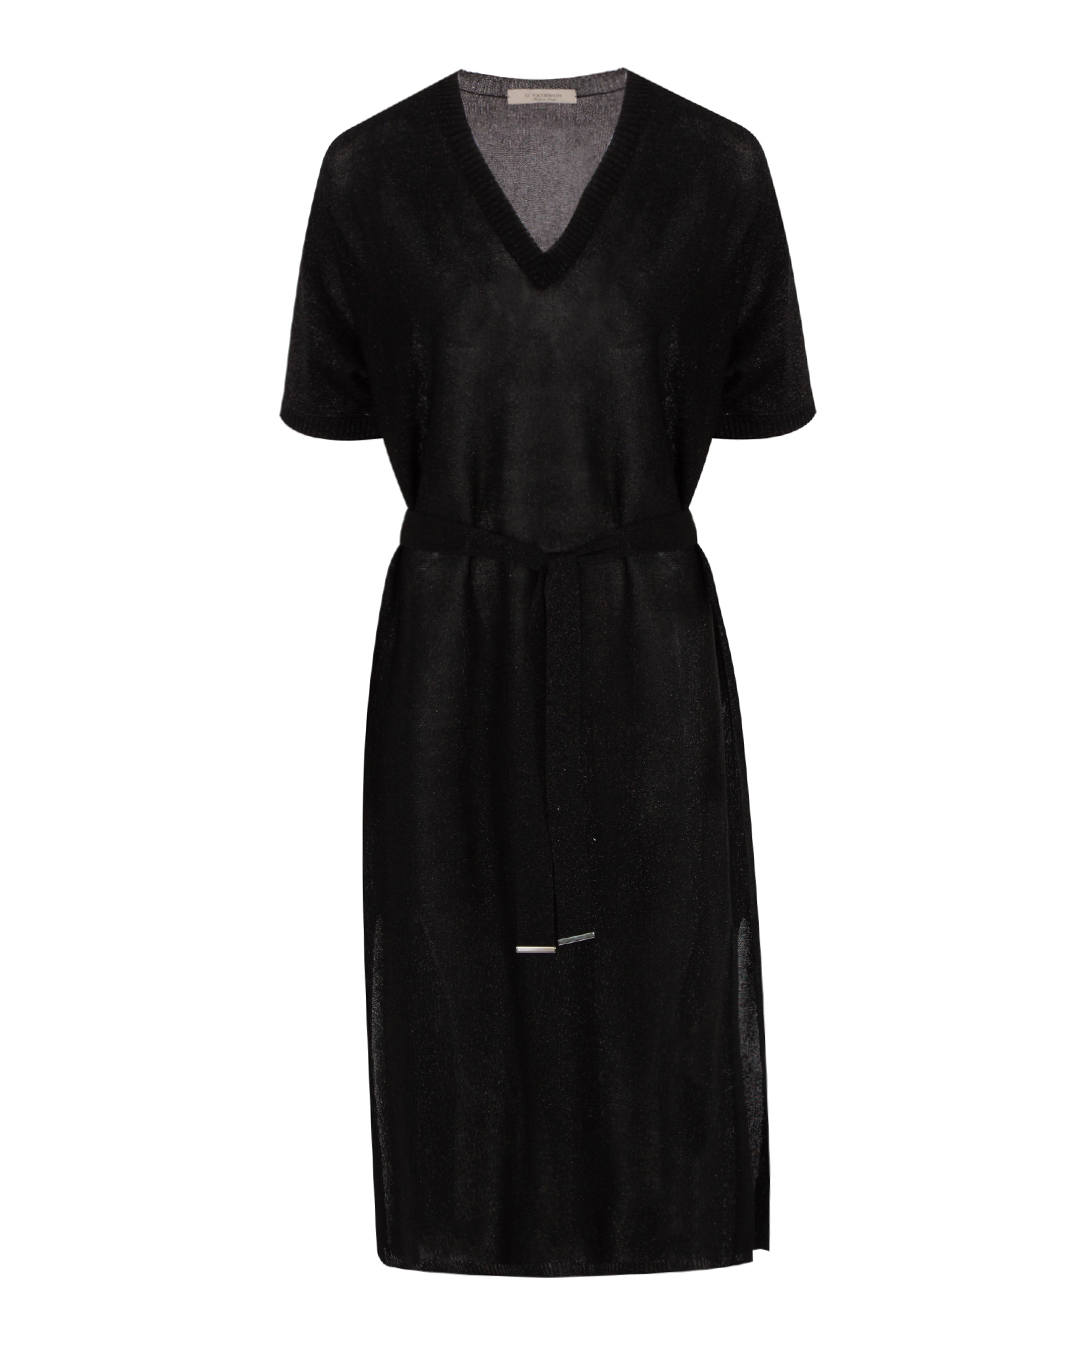 платье D.EXTERIOR 58027 черный l, размер l - фото 1